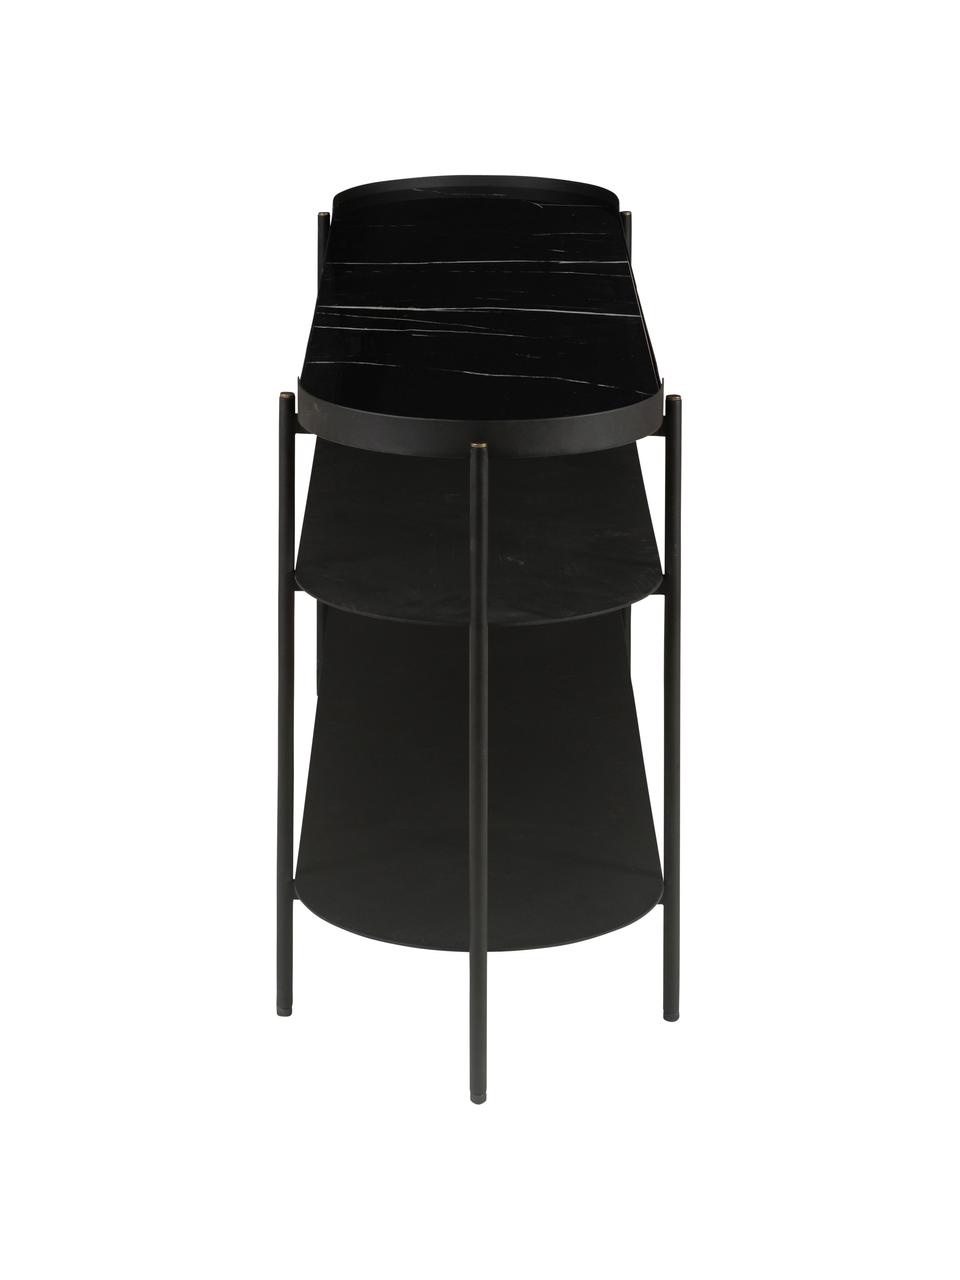 Mramorovaný konzolový stolek Complice, Černá, mramorovaná